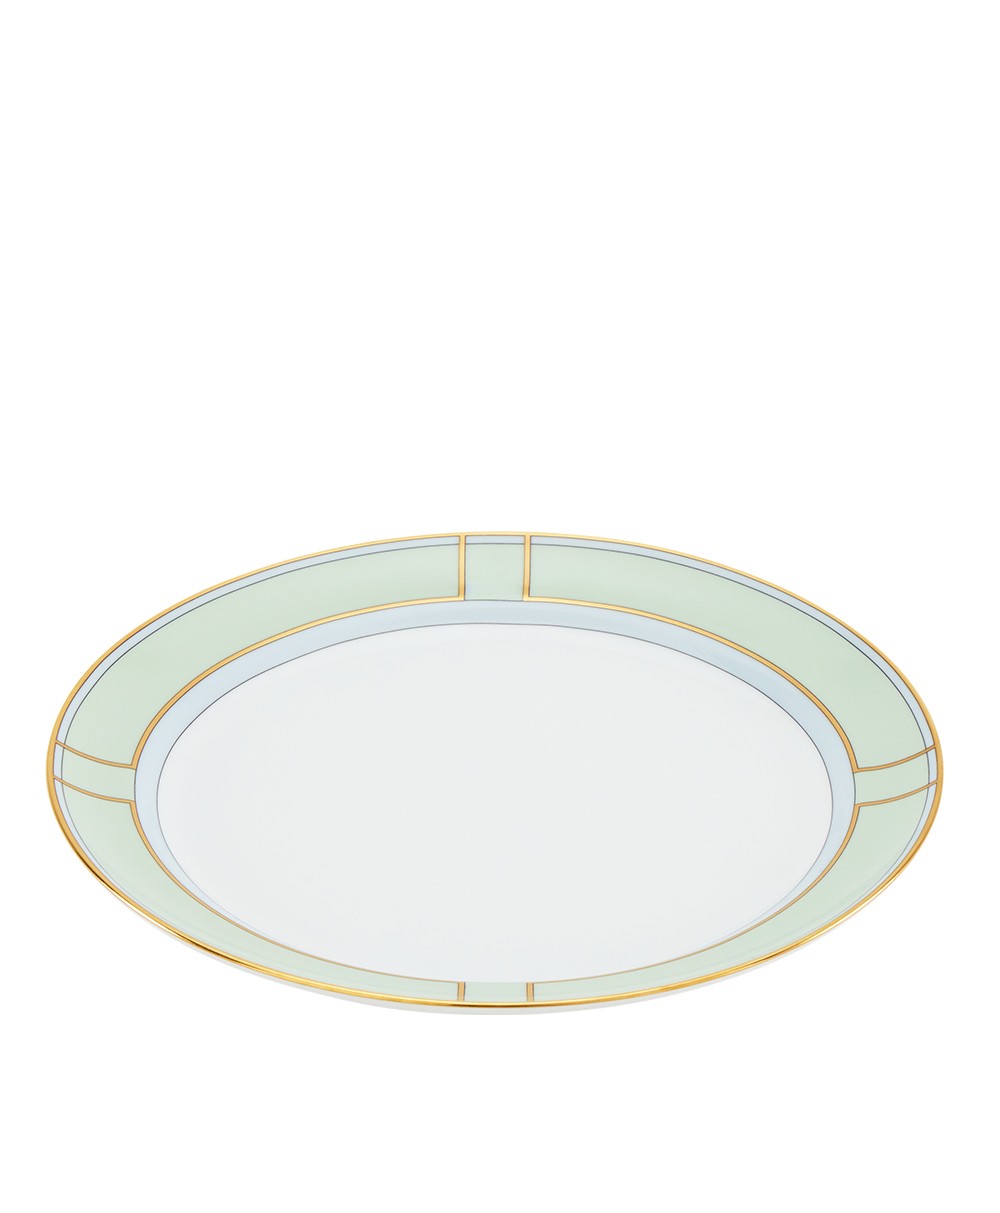 Hier abgebildet die Dinner Plate der Diva Kollektion von Ginori 1735 - RAUM concept store